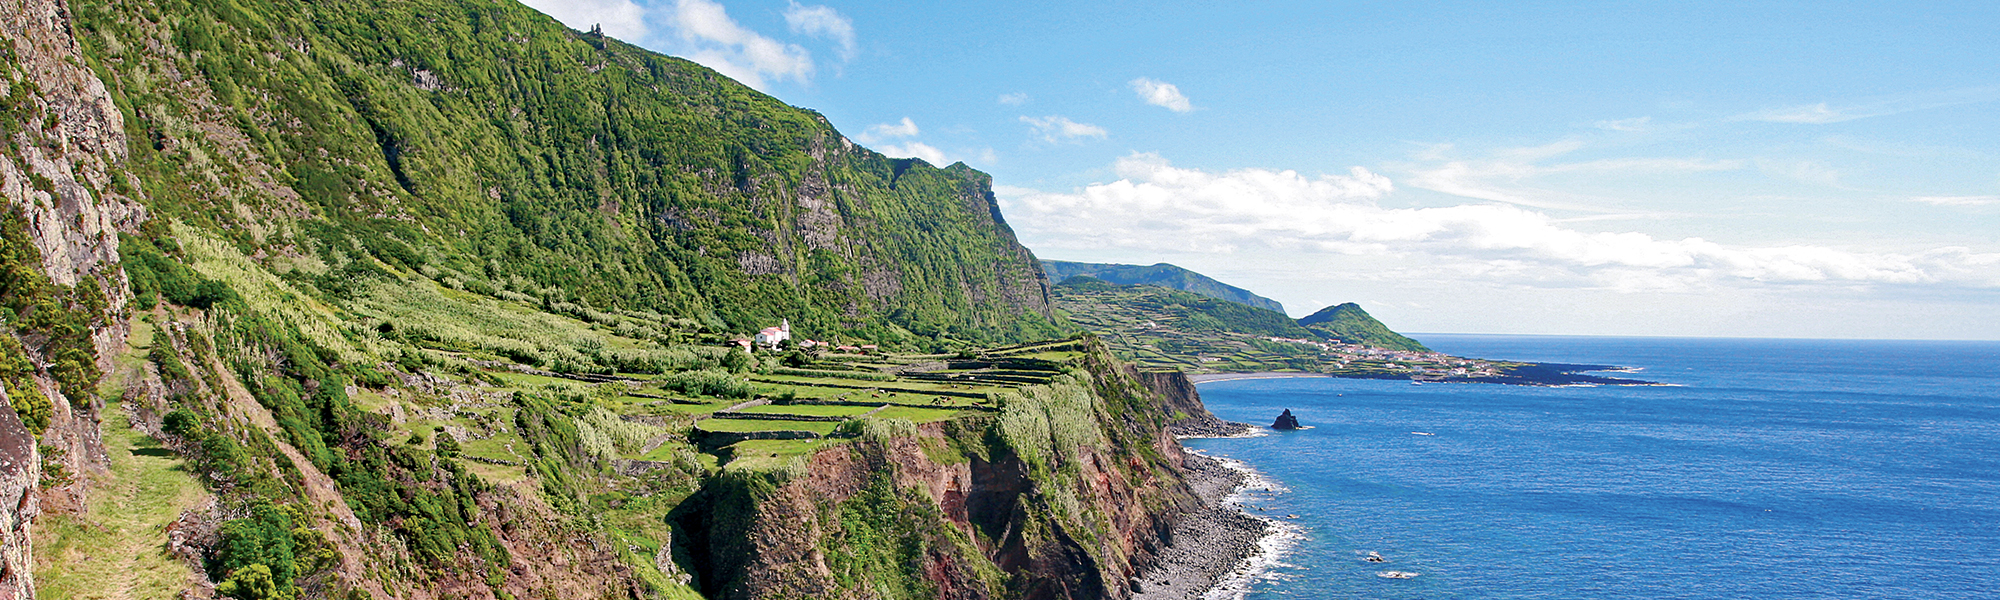 Voyage aux Açores © Veracor - Turismo de Acores